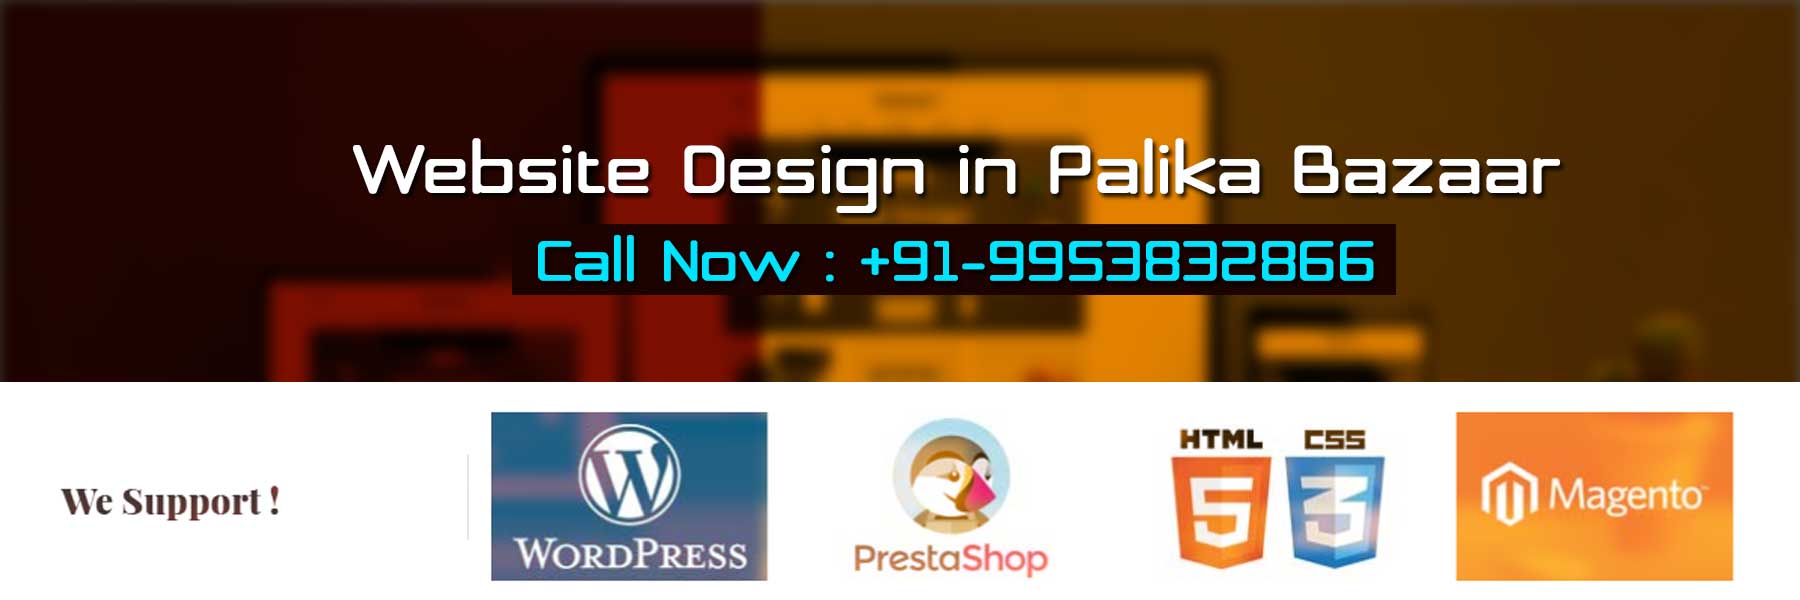 Website Design in Palika Bazaar